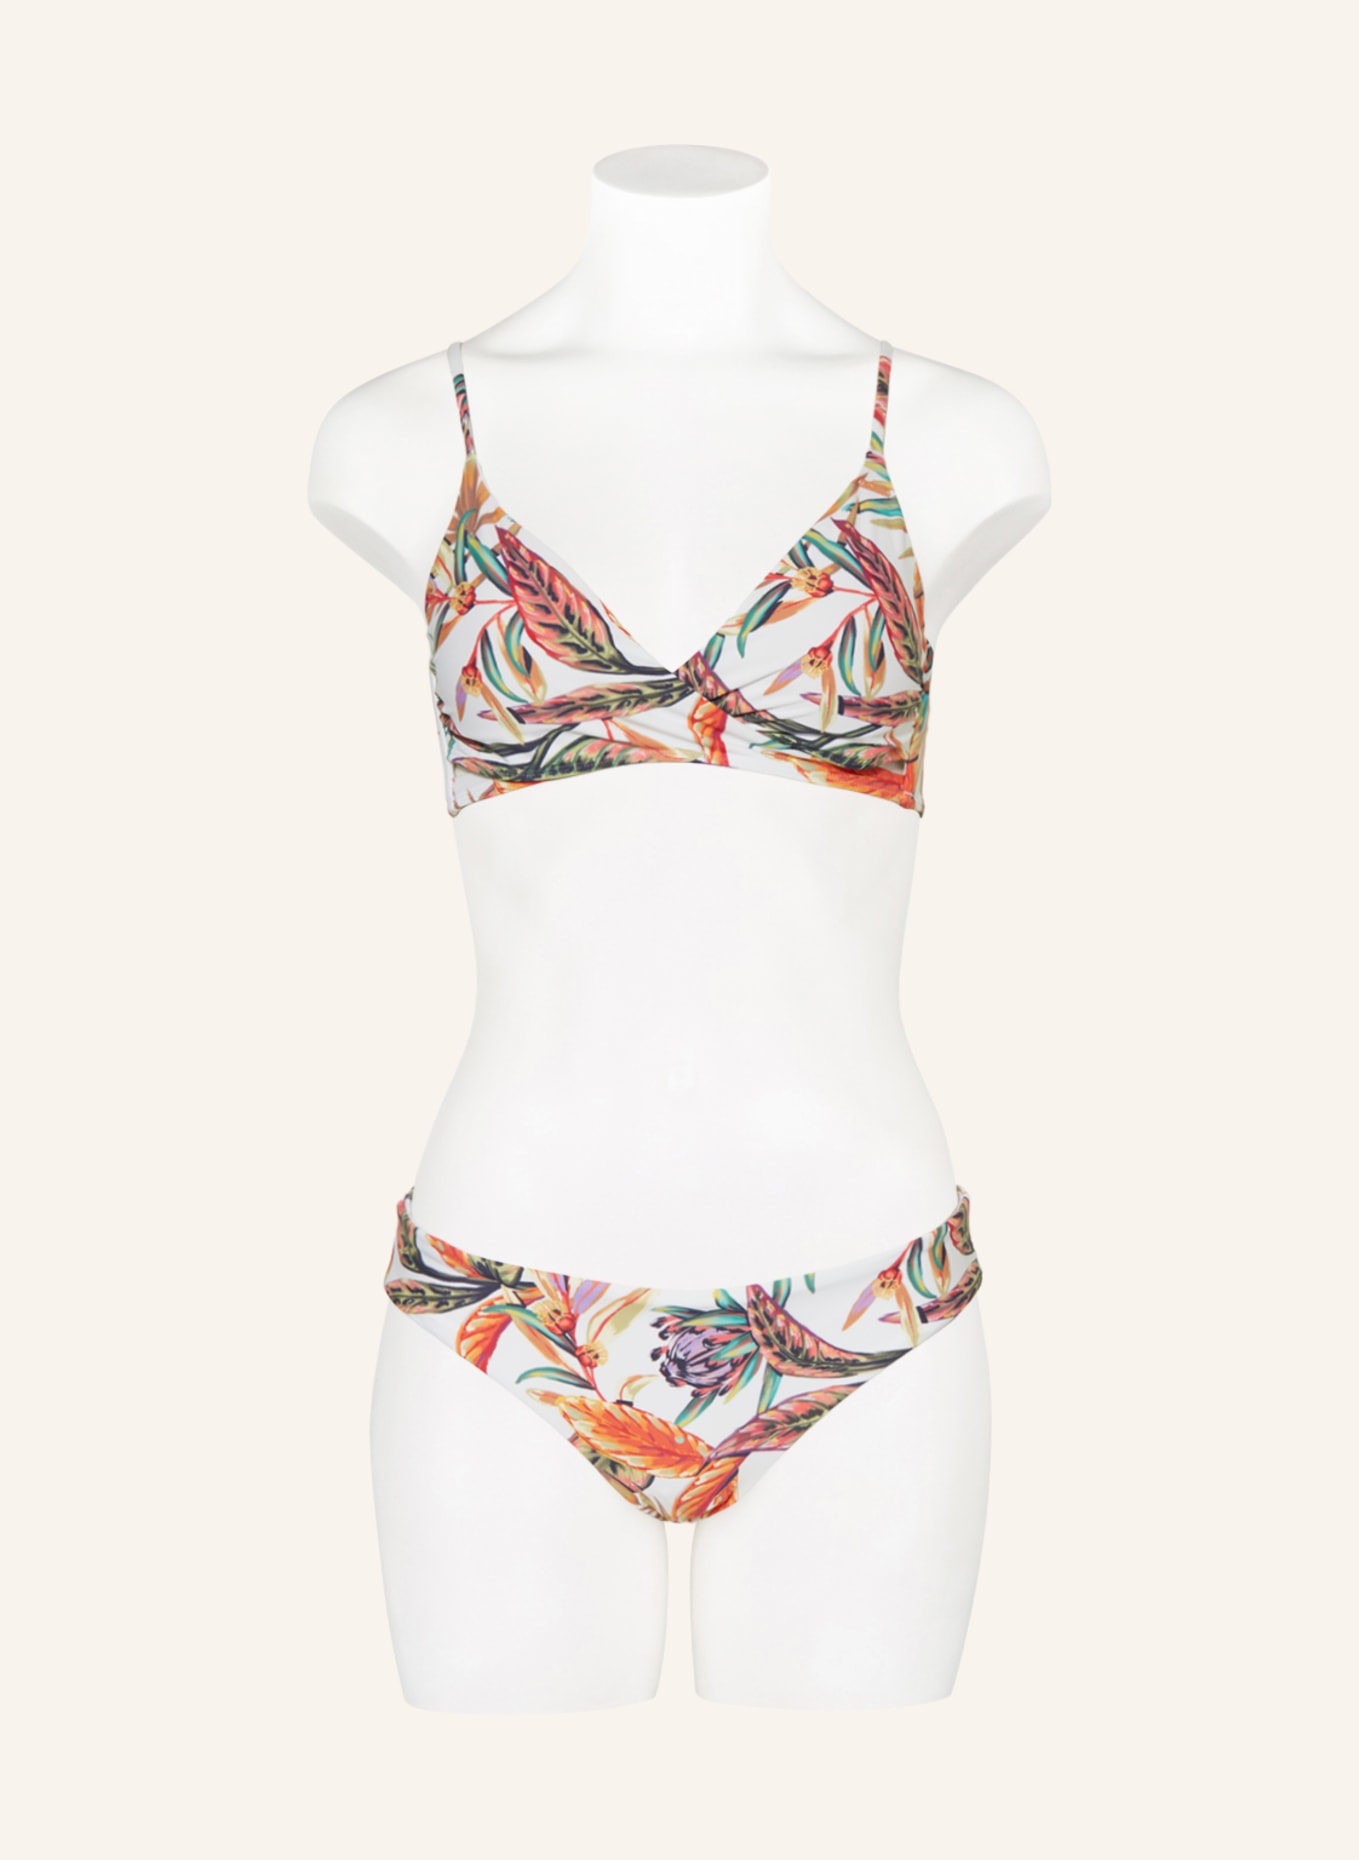 O'NEILL Bralette bikini BAAY - MAOI in wrap look, Color: ECRU/ ORANGE/ GREEN (Image 2)